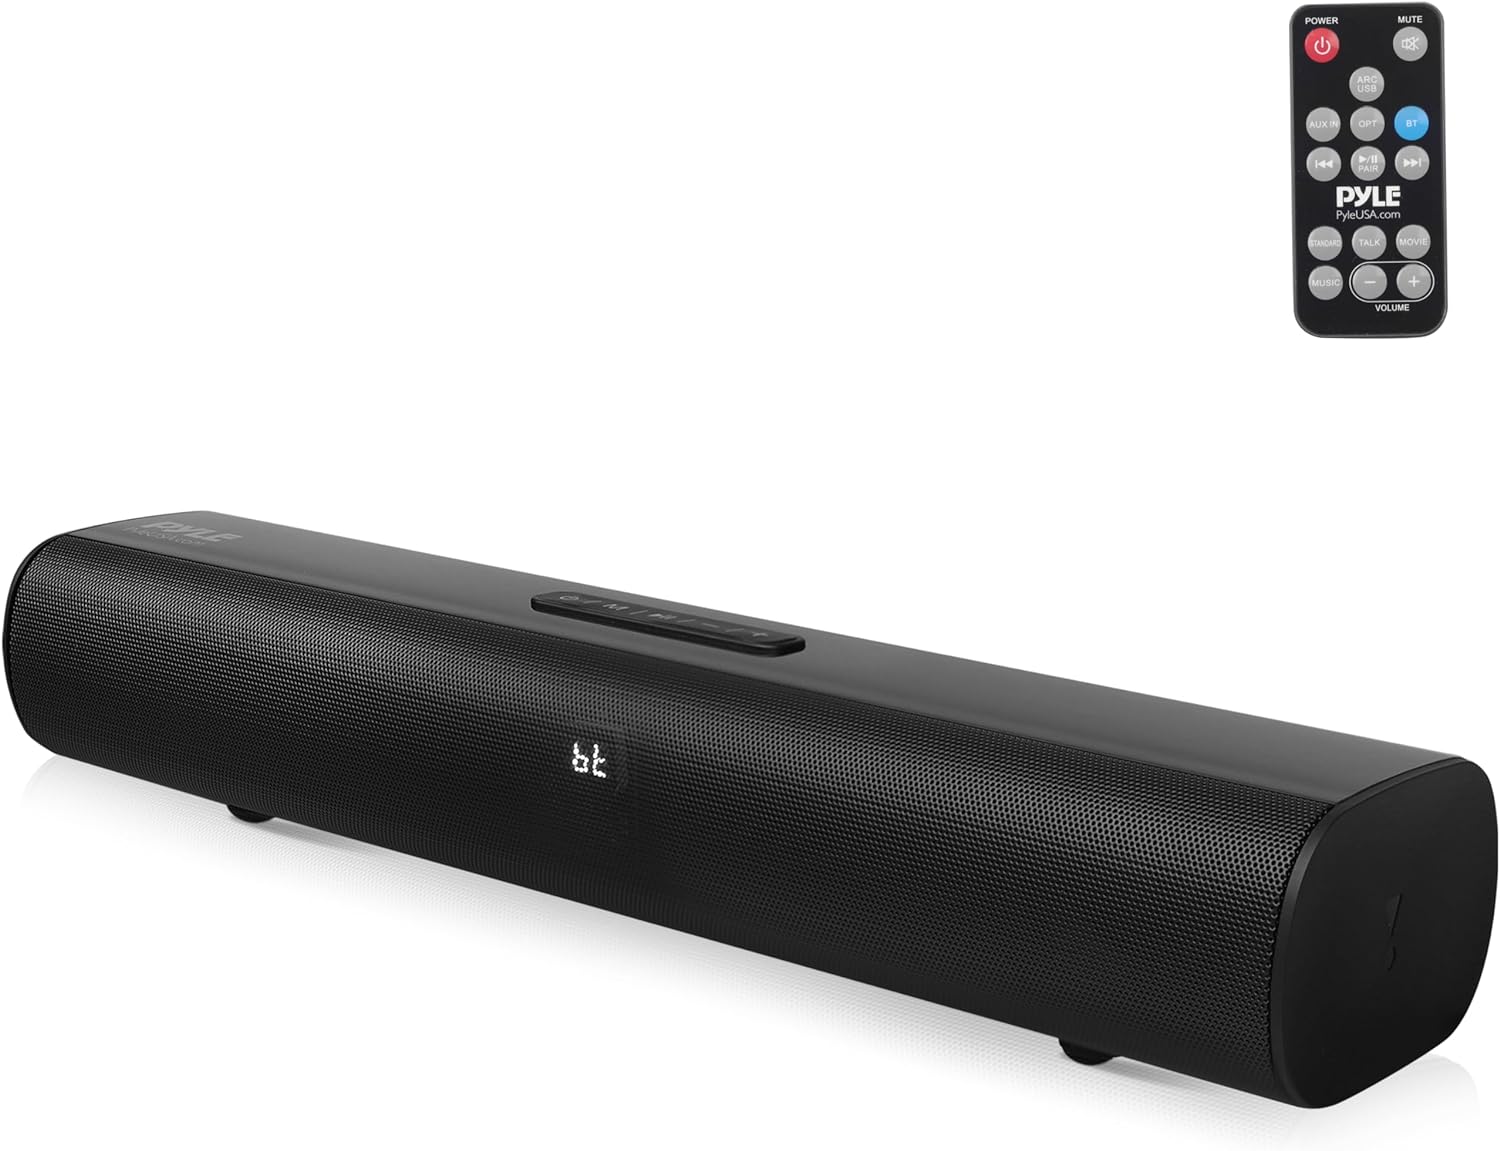 Pyle 2-Channel Tabletop Soundbar Digital Speaker System Review